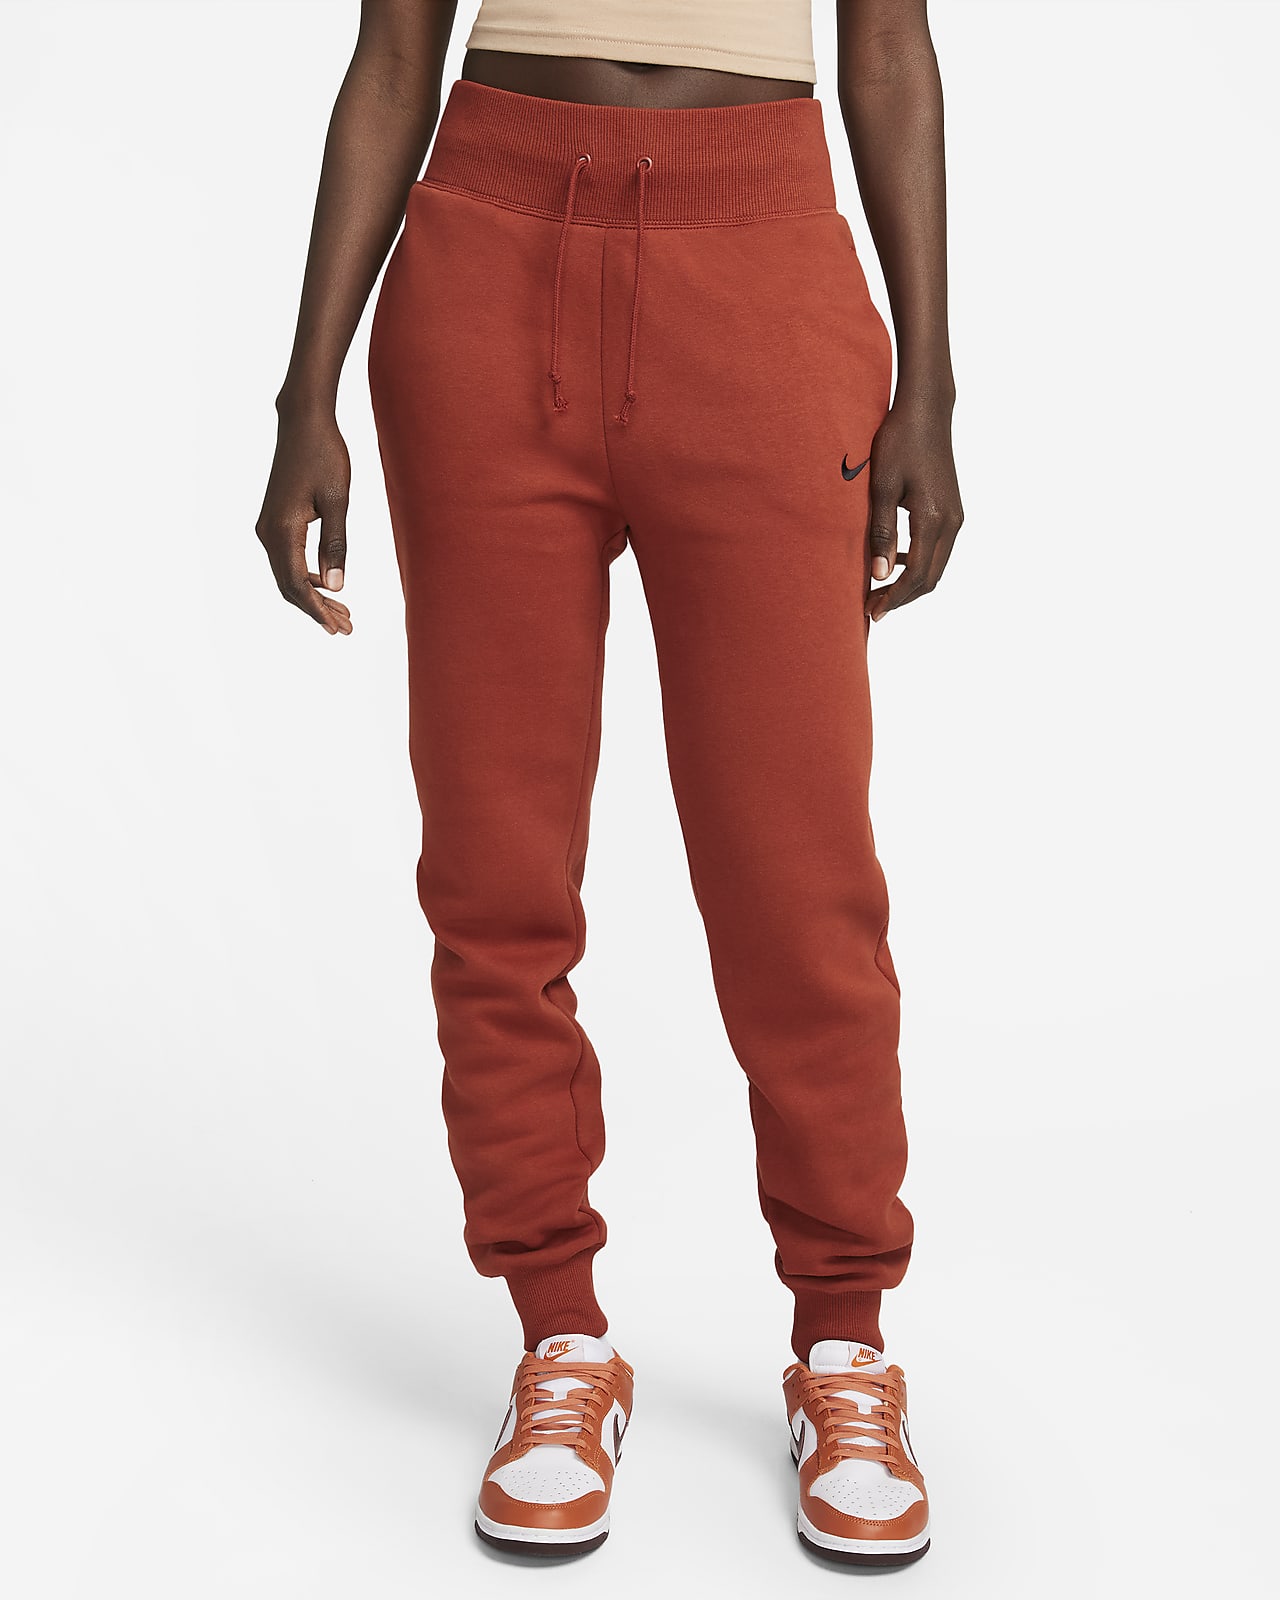 Nike Sportswear Phoenix Fleece Orange Jogger Sweatpants